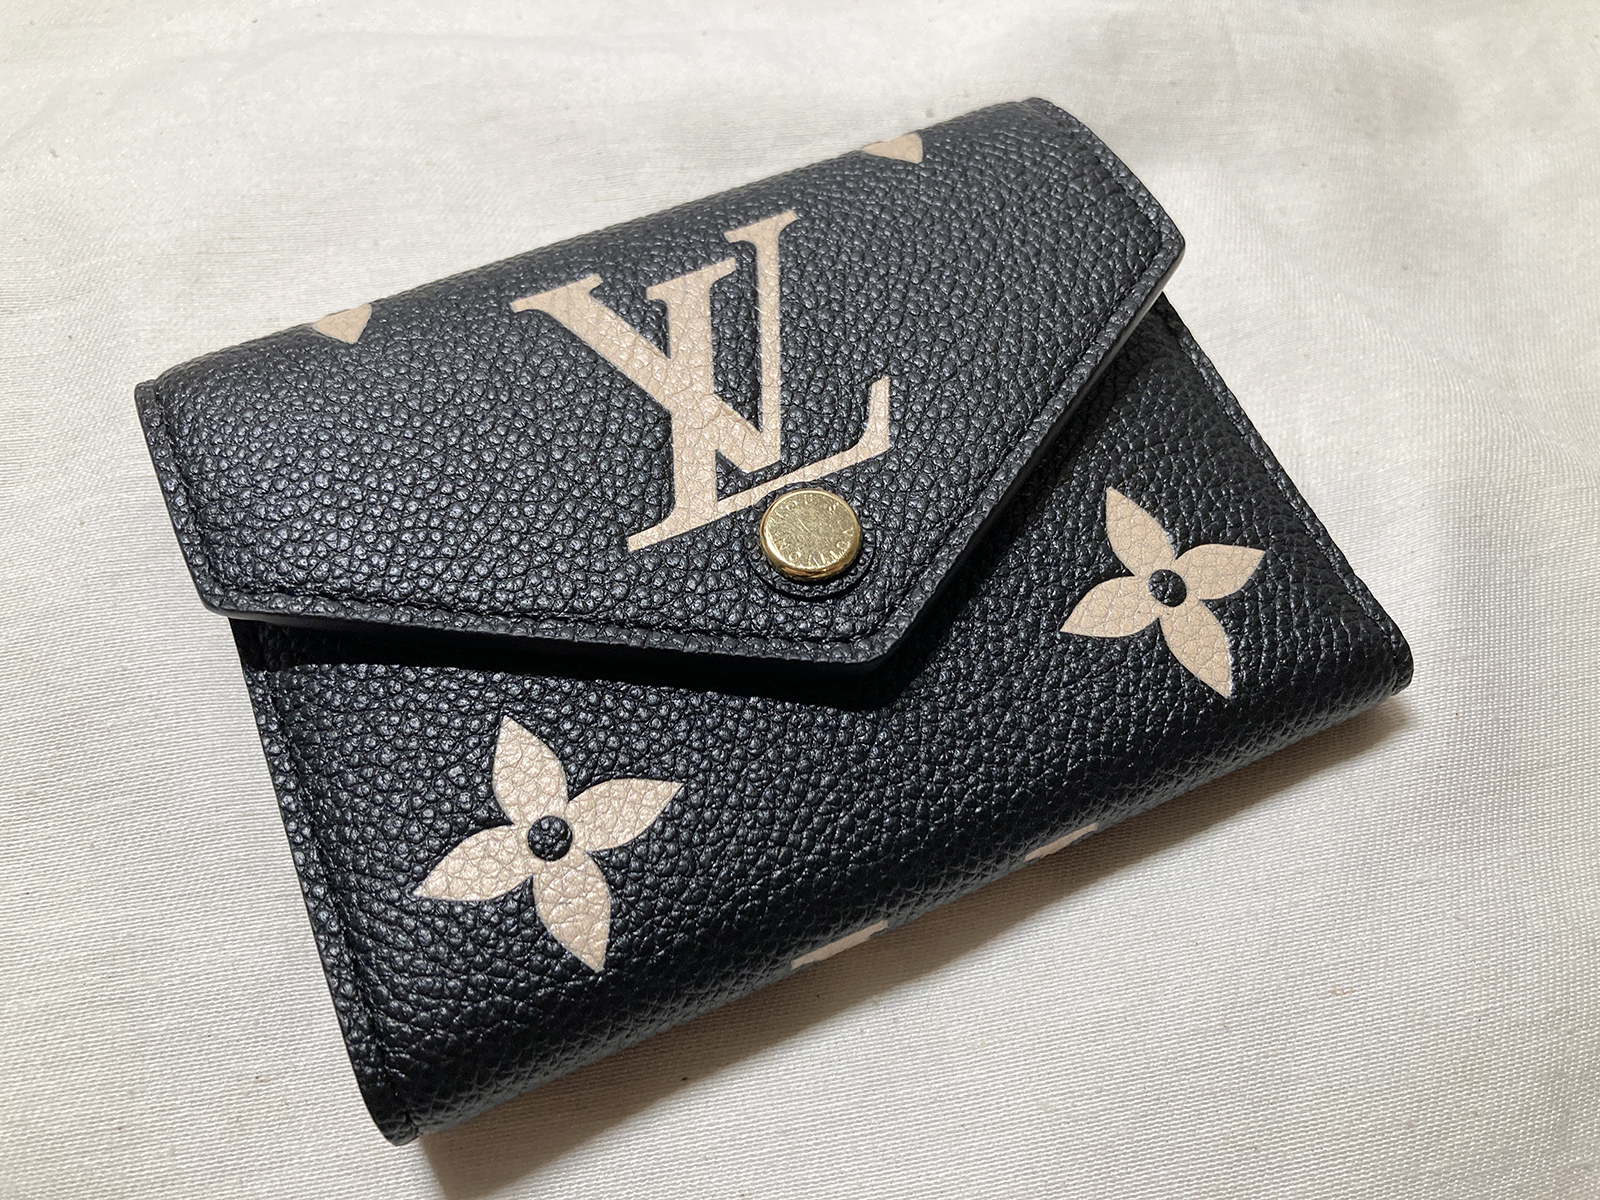 Review Em túi Hiệu dưới 30tr đáng mua  Bí mật chất liệu hái ra tiền của Louis  Vuitton  YouTube